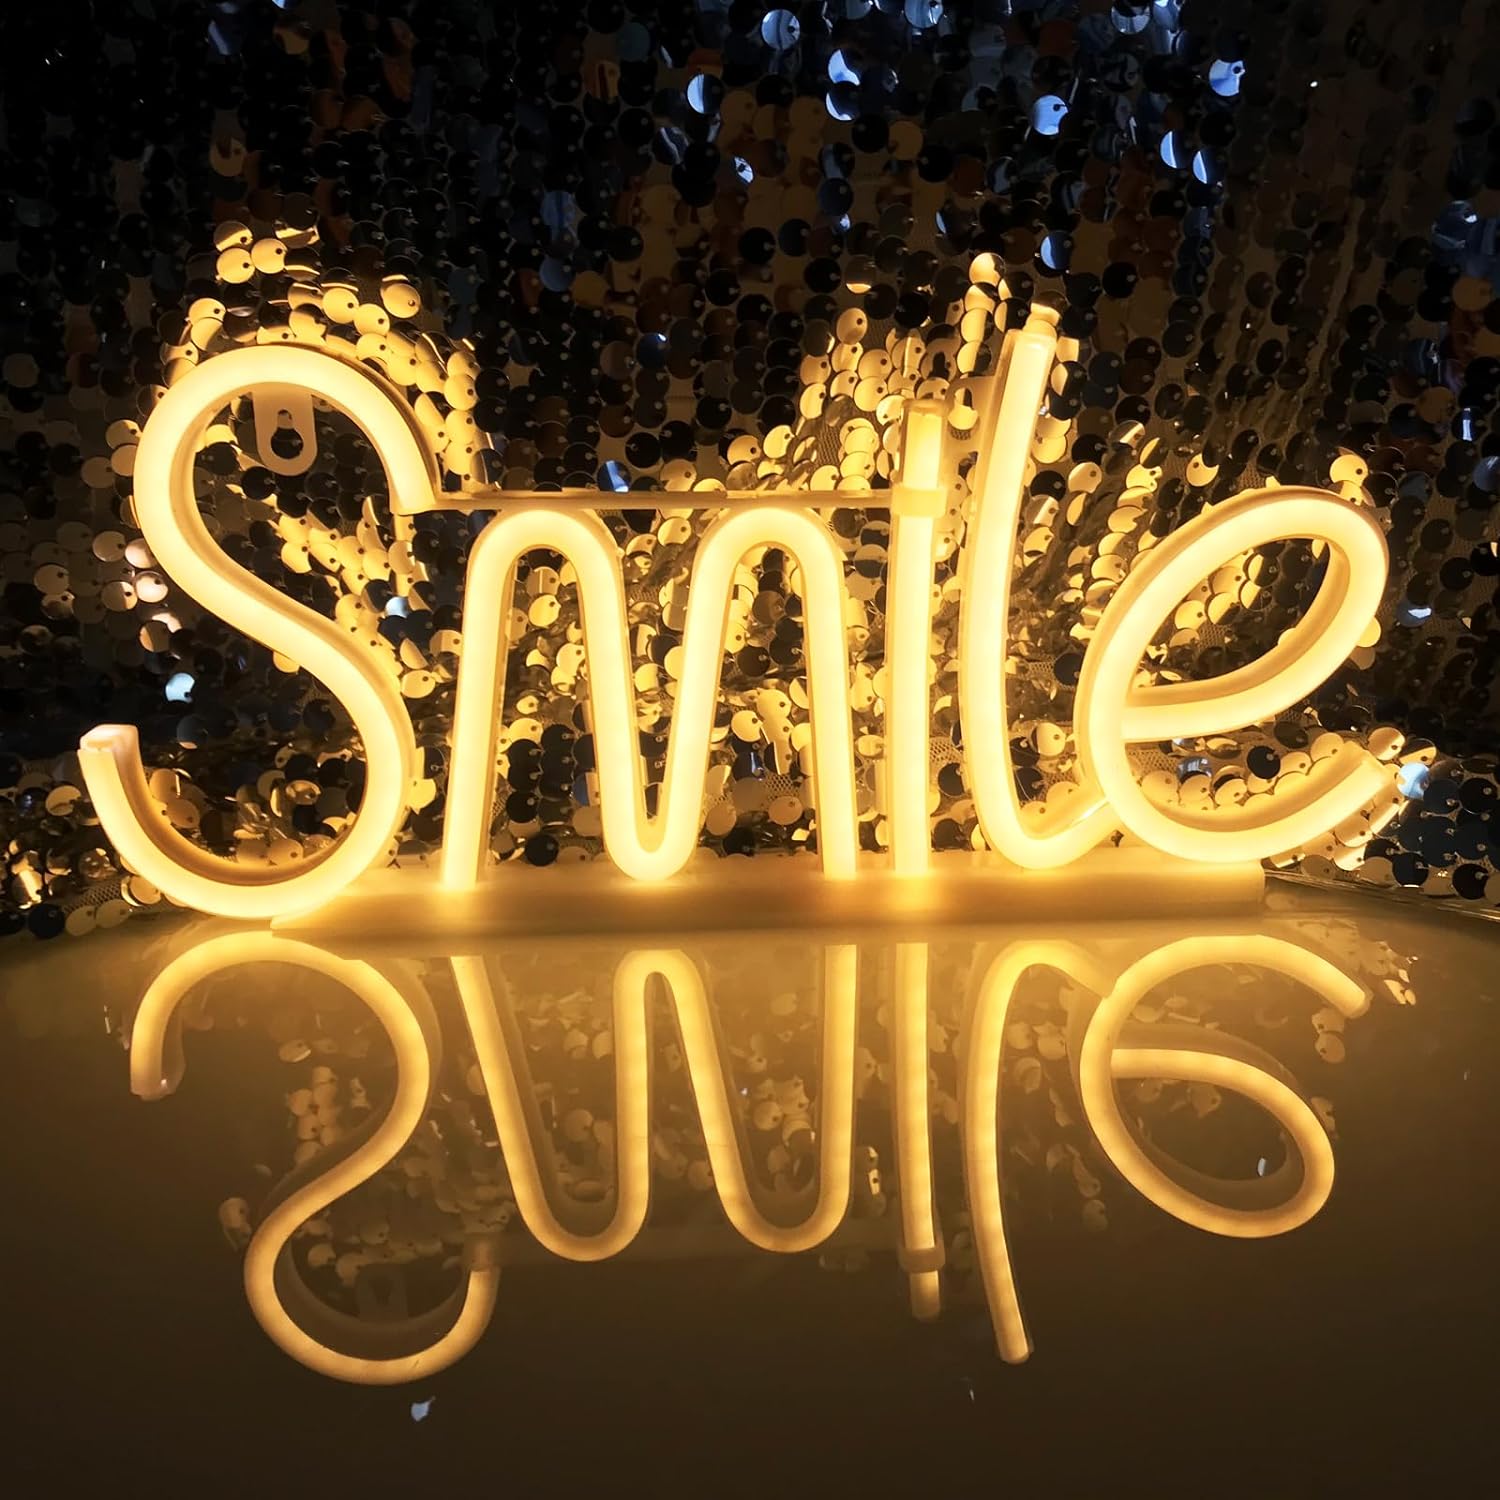 Lächeln führte leuchtendes Zeichen an der Wand Neonlicht